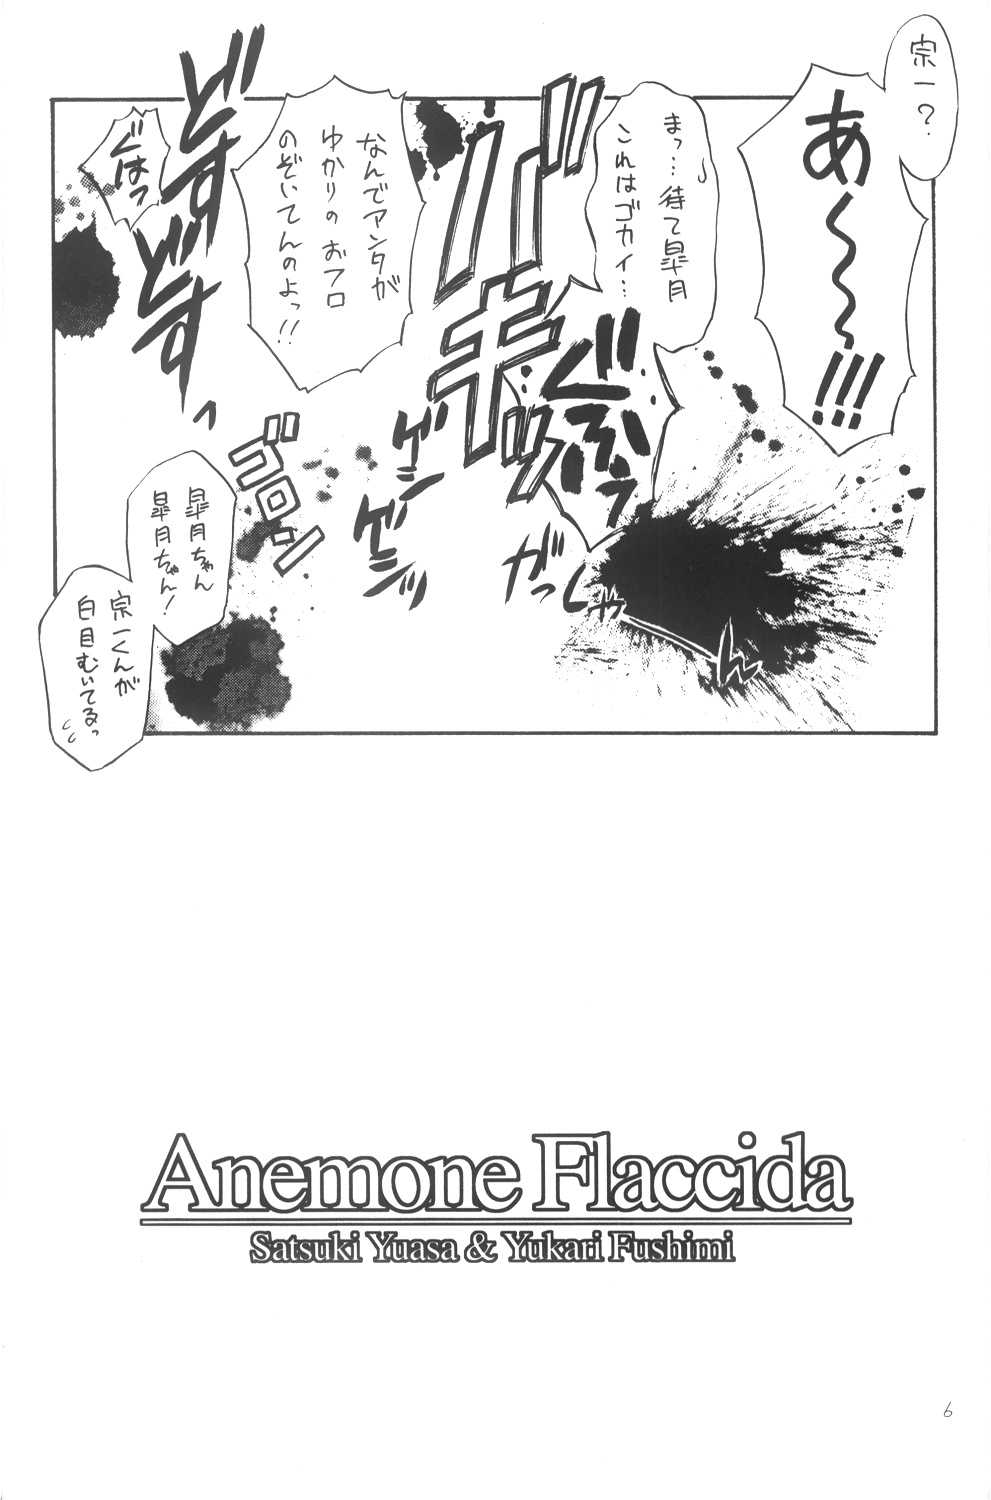 (C64) [Yakan Hikou (Inoue Tommy)] Anemone Flaccida (White Album) (C64) [夜間飛行 (いのうえとみい)] Anemone Flaccida (ホワイトアルバム)